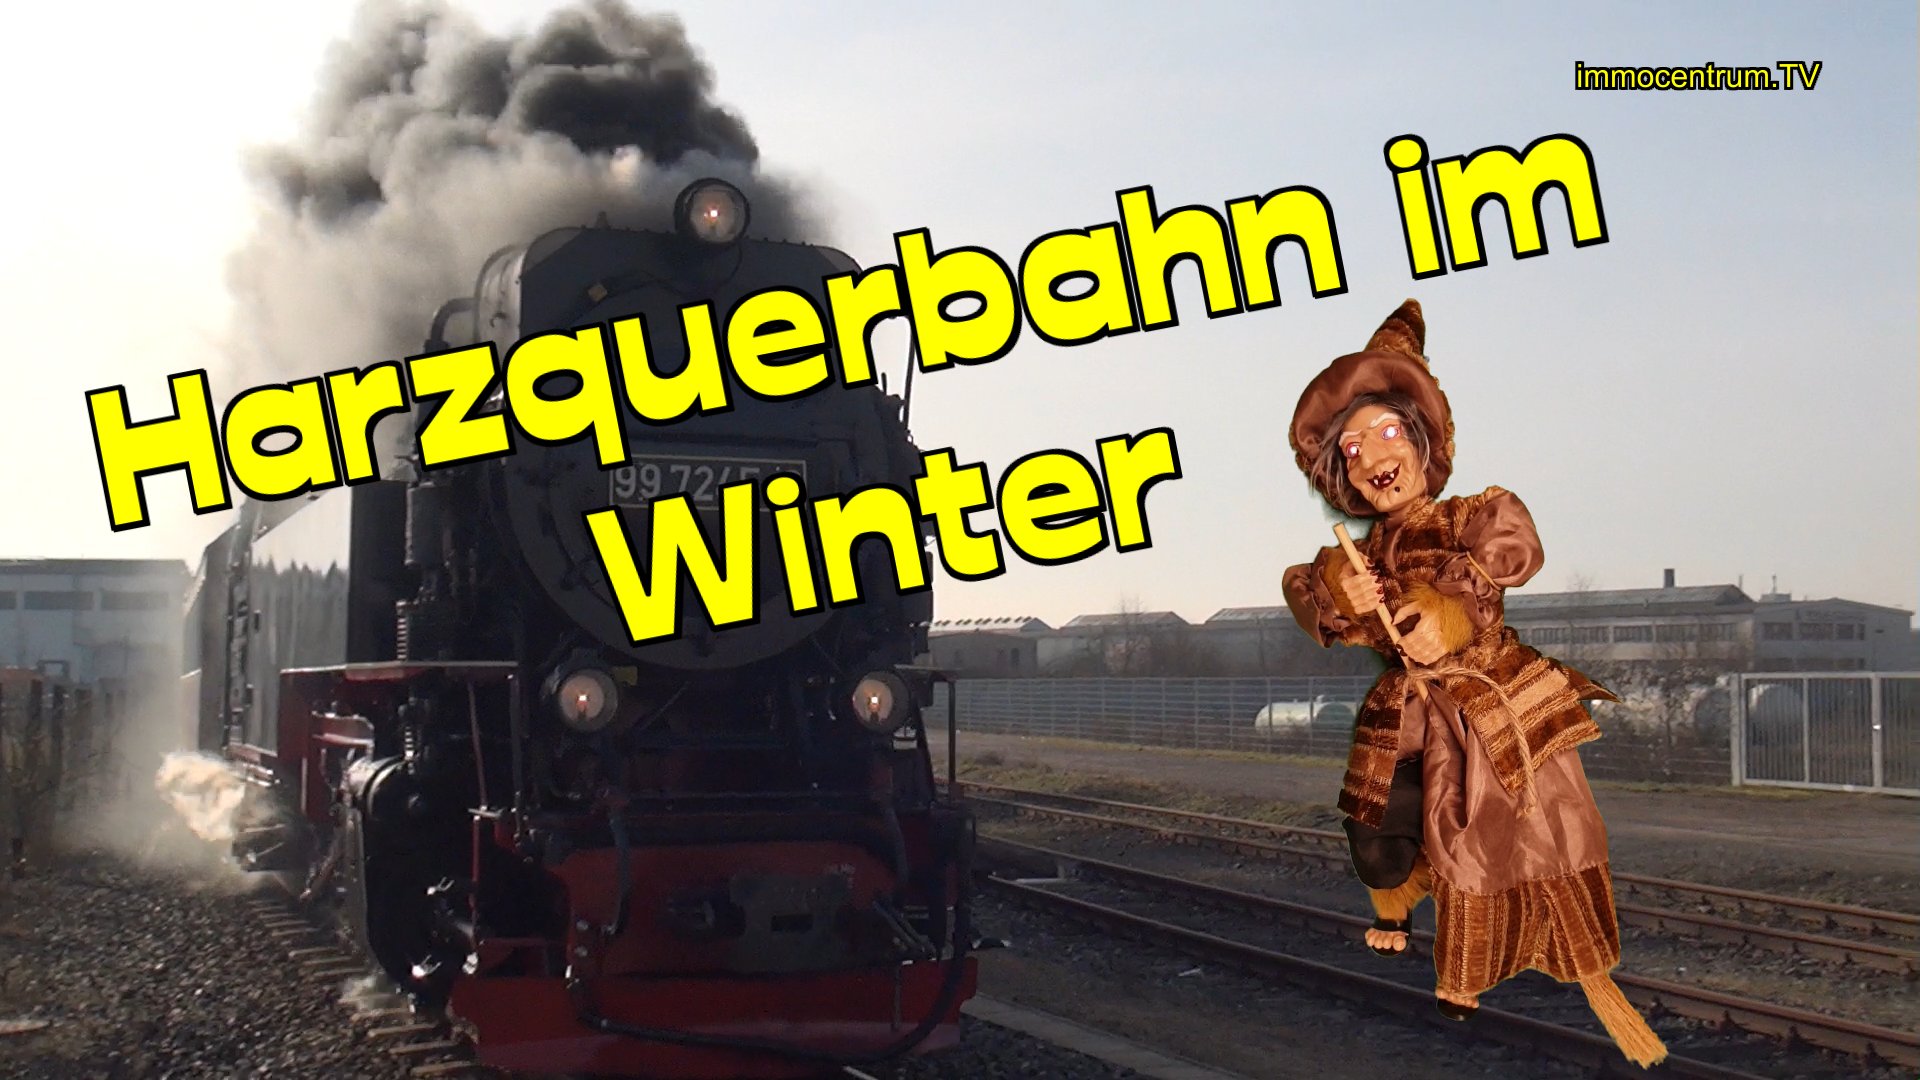 Harzquerbahn WINTER